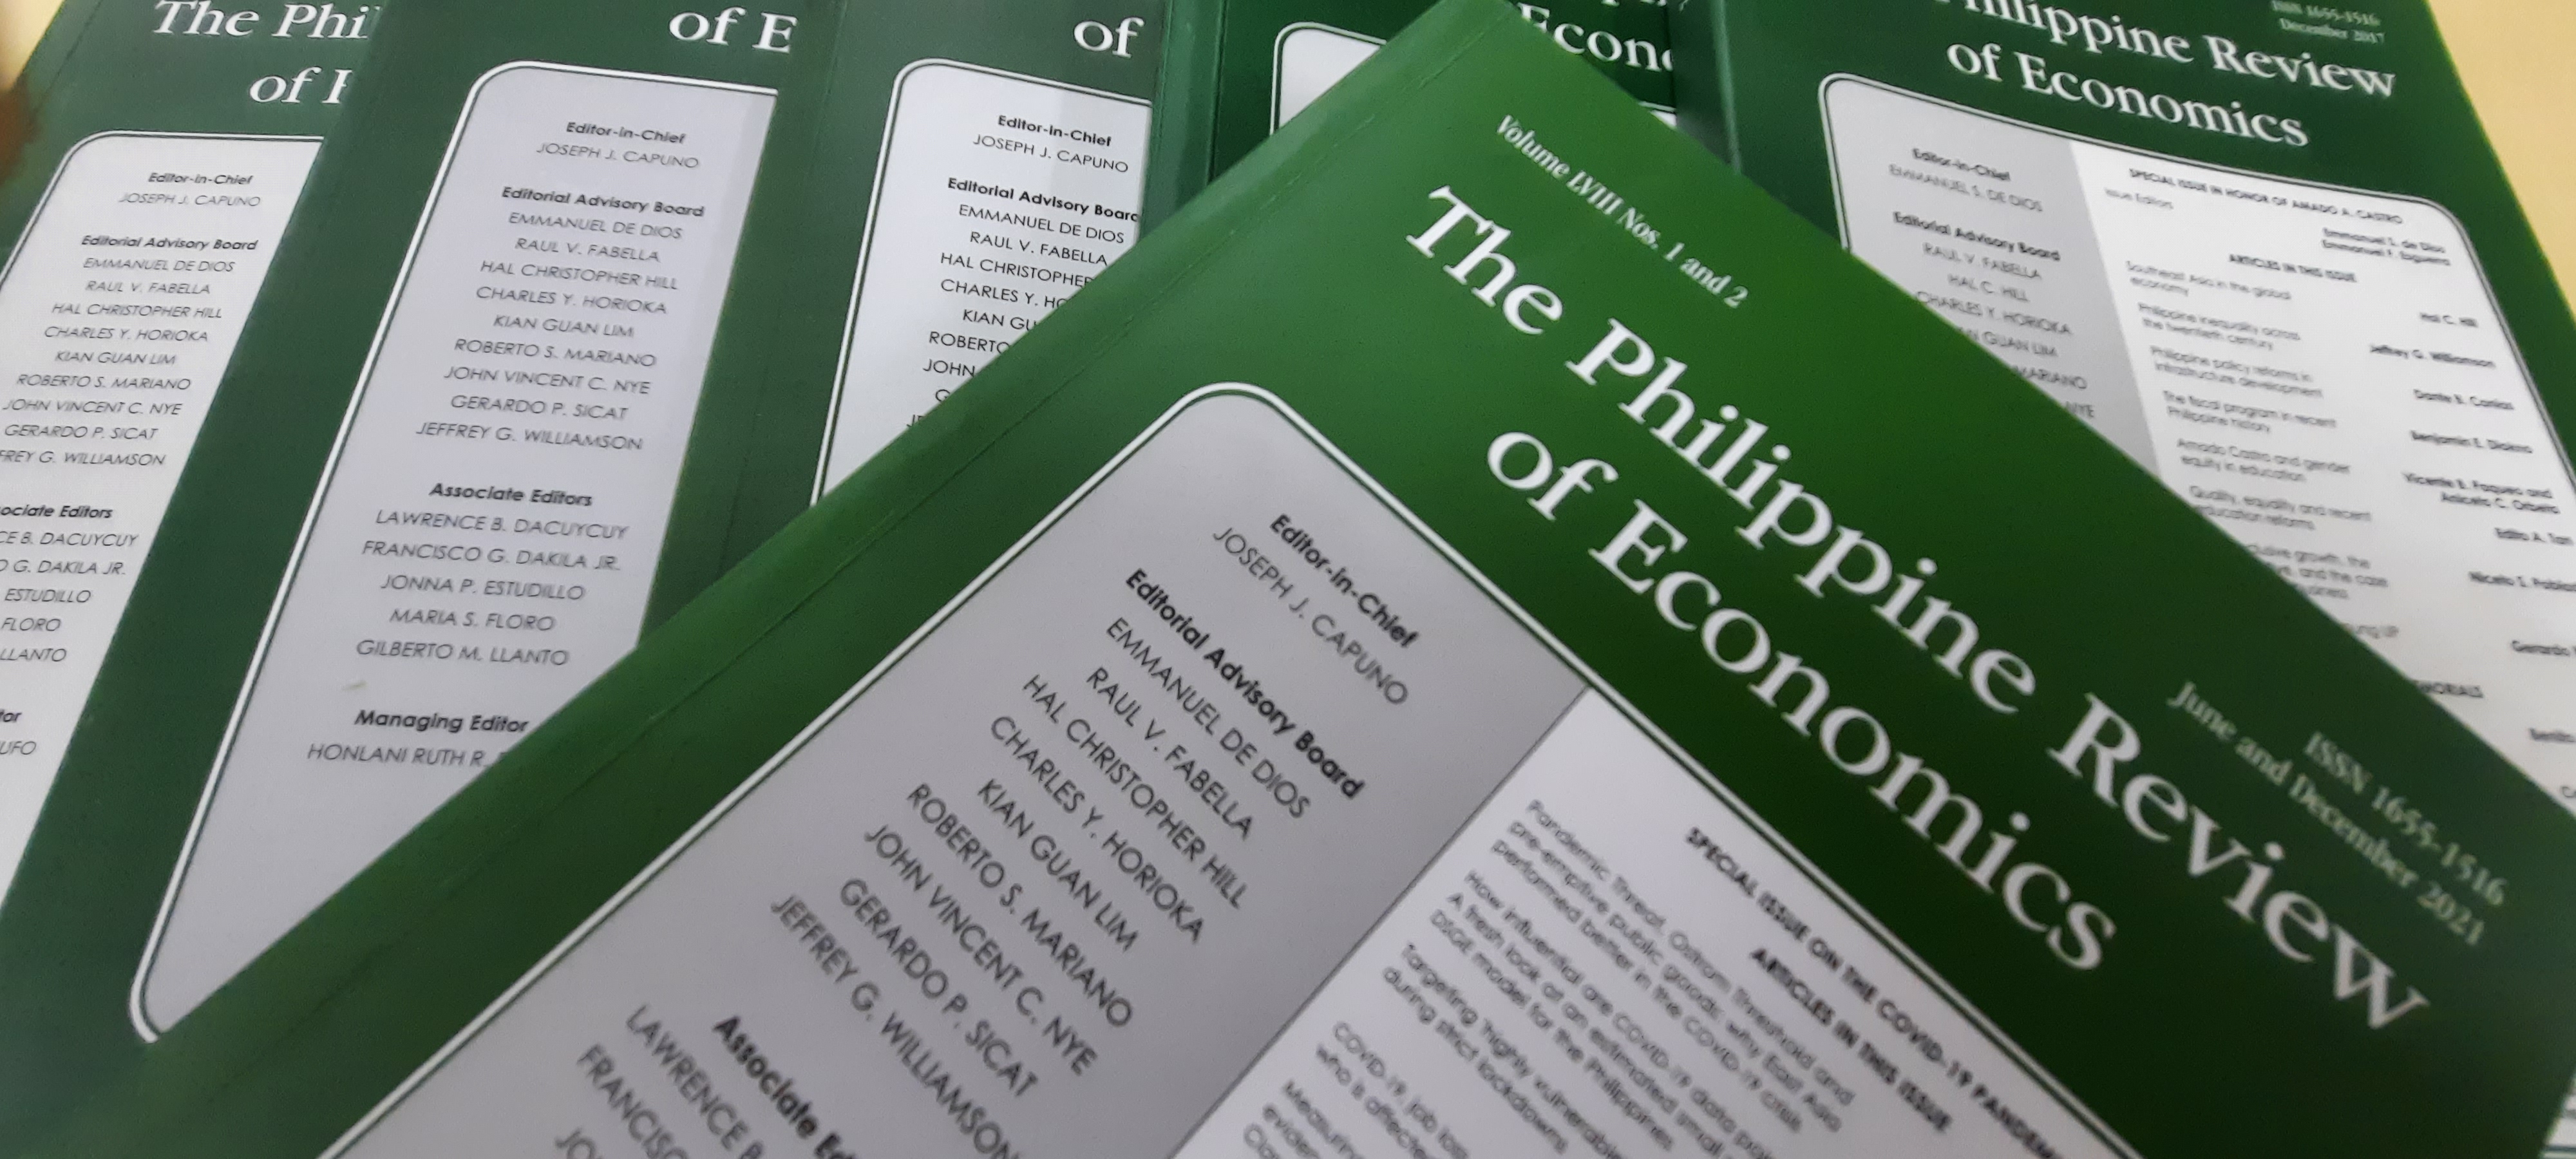 Philippines Review of Economics